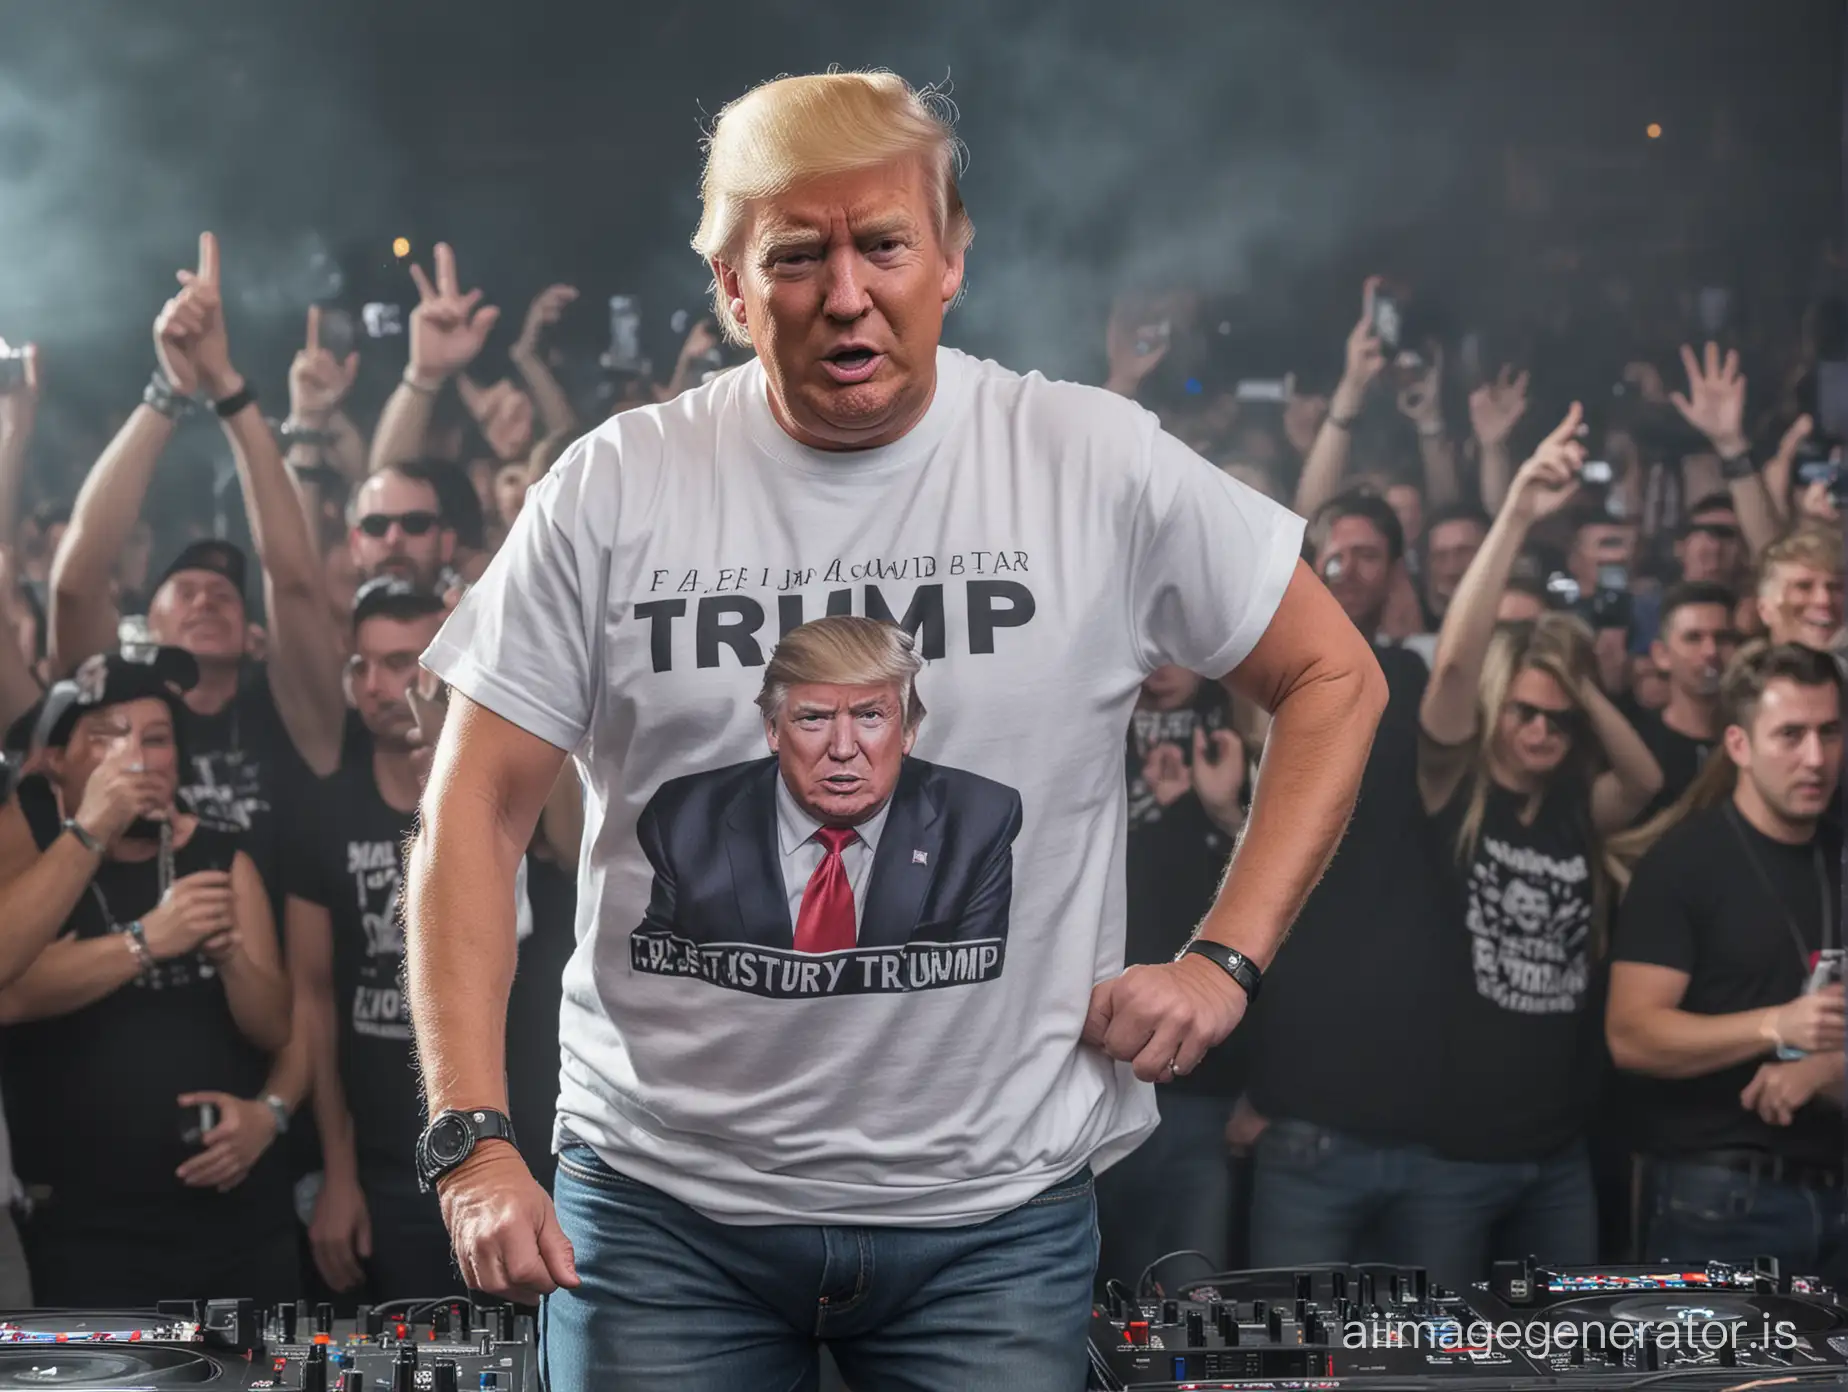 Donald-Trump-DJing-at-a-Techno-Rave-in-Casual-Attire